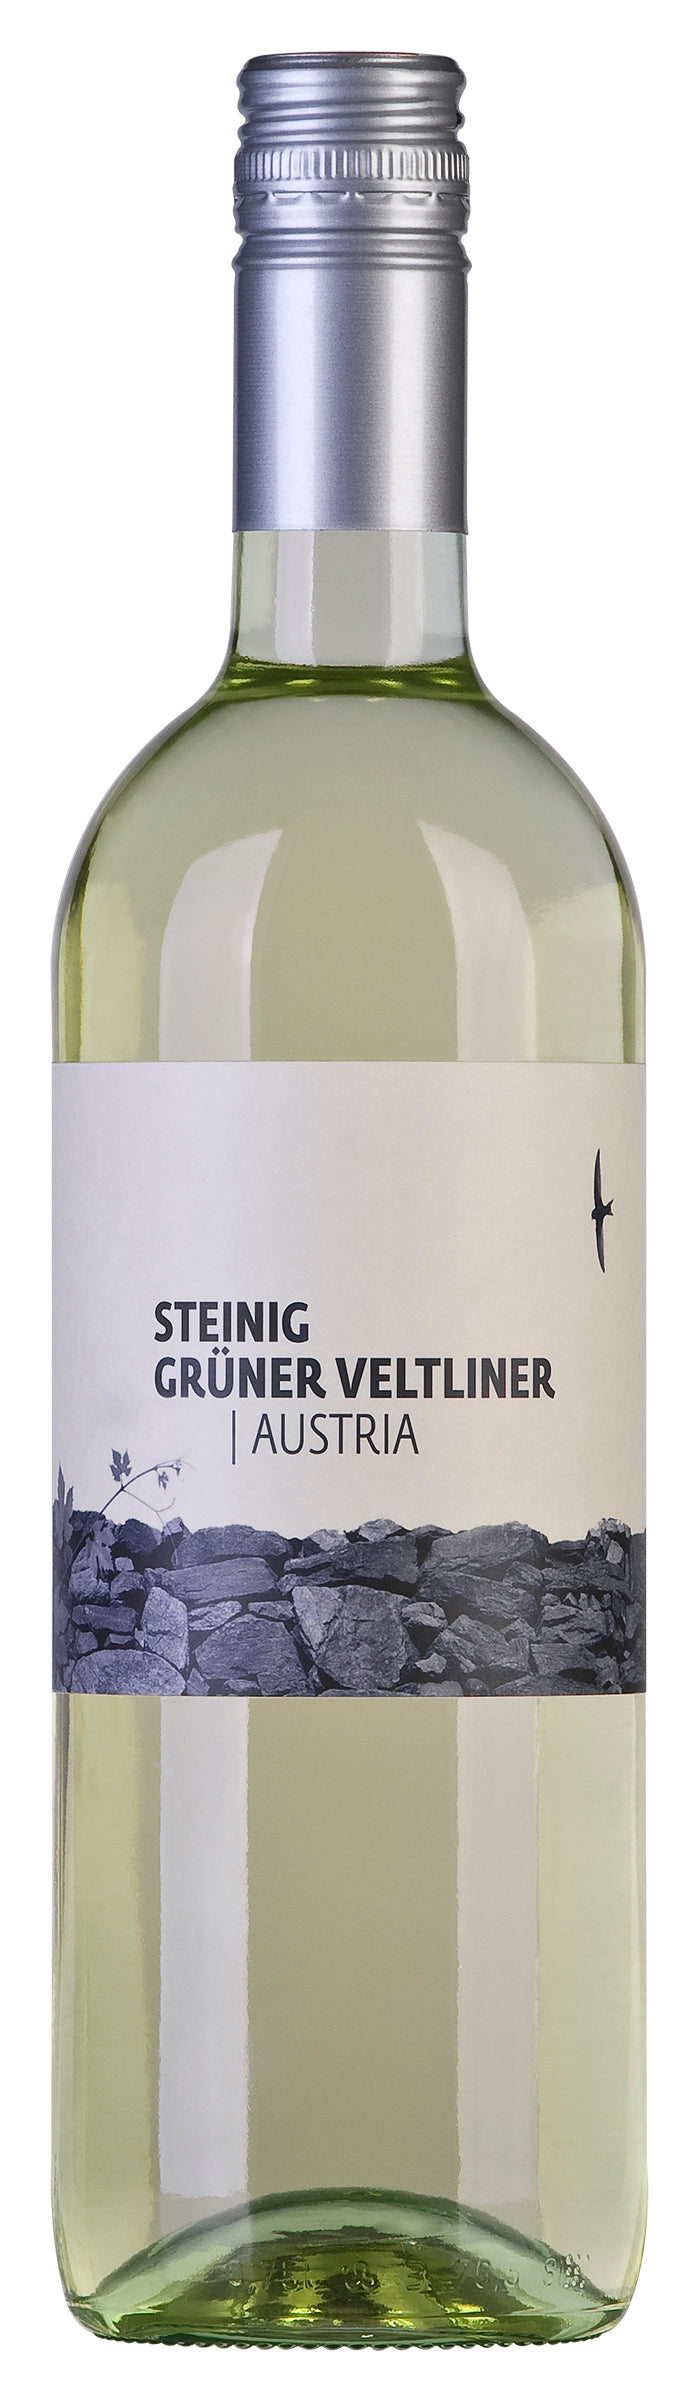 Steinig Gruner Veltliner 2019